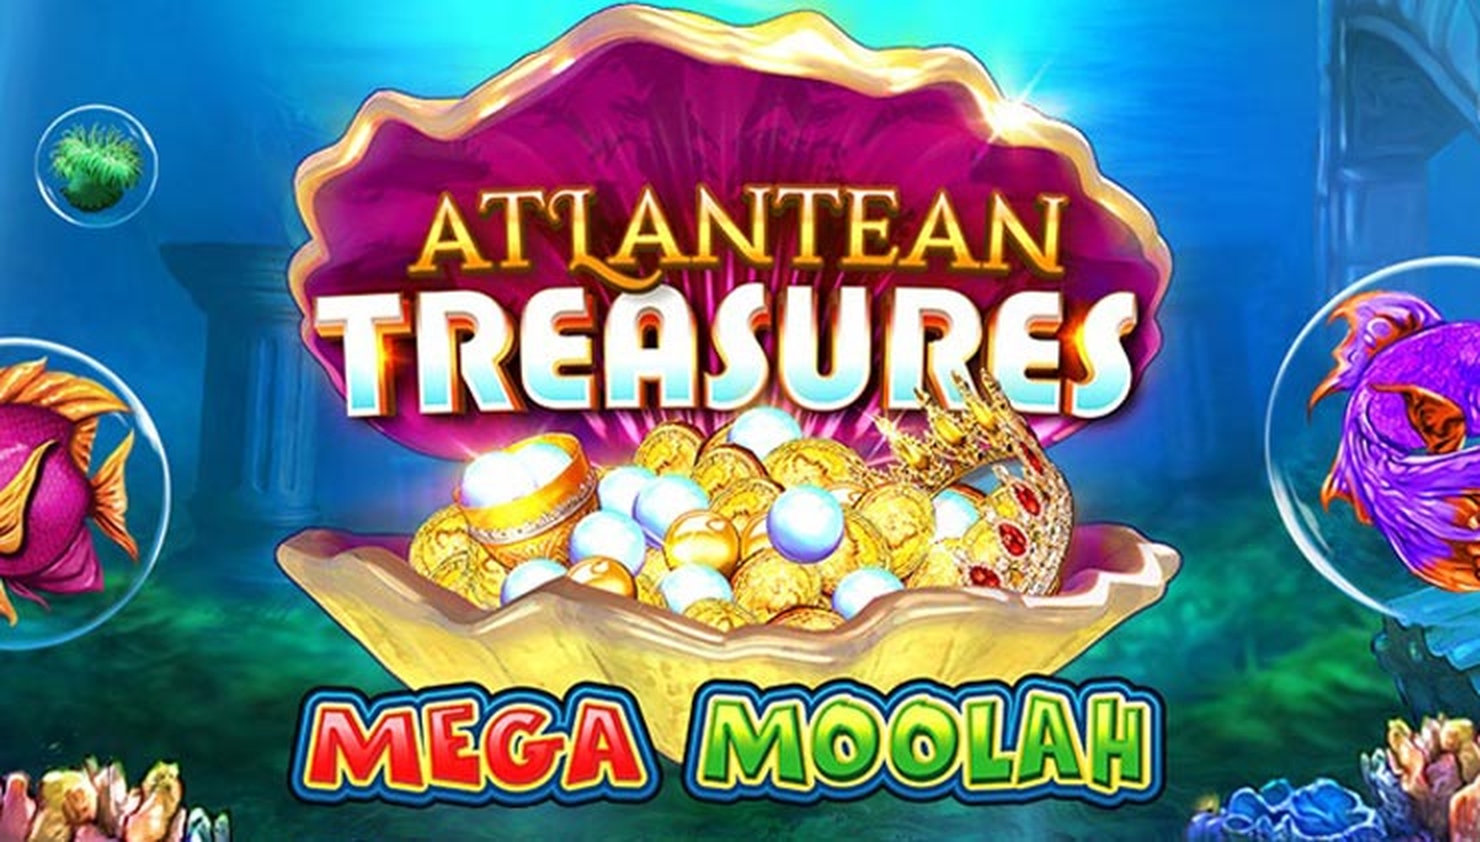 Atlantean Treasures Mega Moolah demo